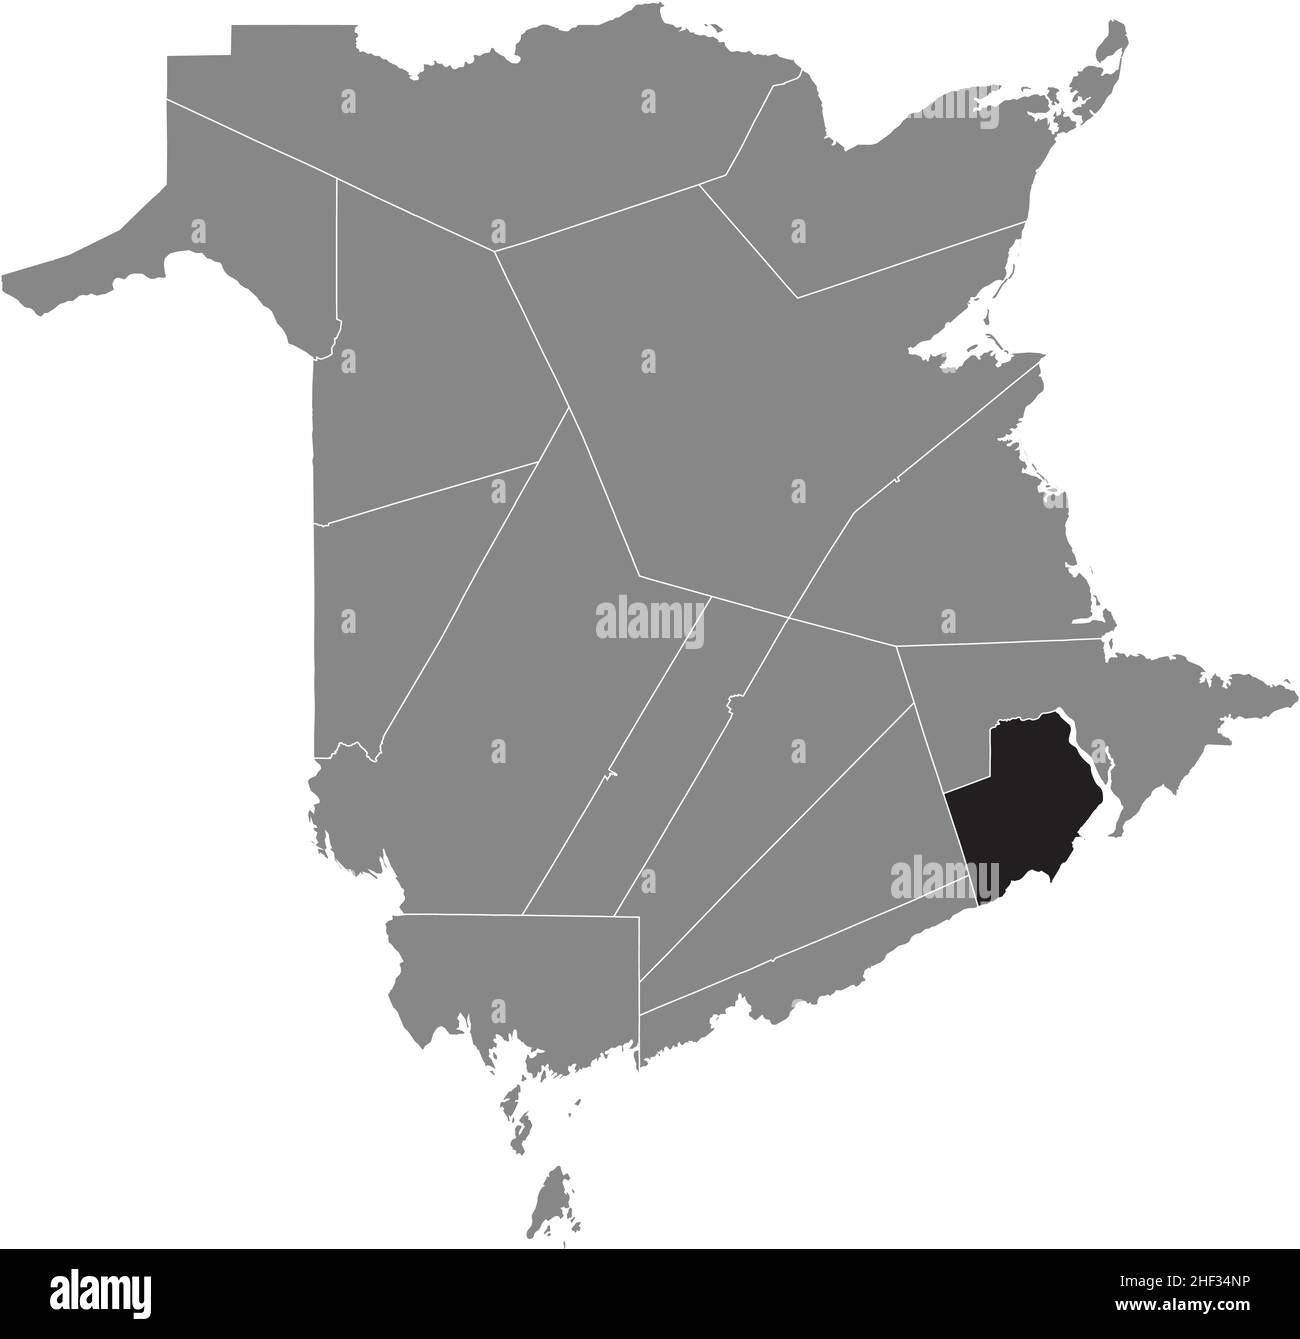 Schwarz flach leer markiert Lageplan des ALBERT COUNTY in grauer Verwaltungskarte der Grafschaften des kanadischen Territoriums von New Brunswick, Cana Stock Vektor